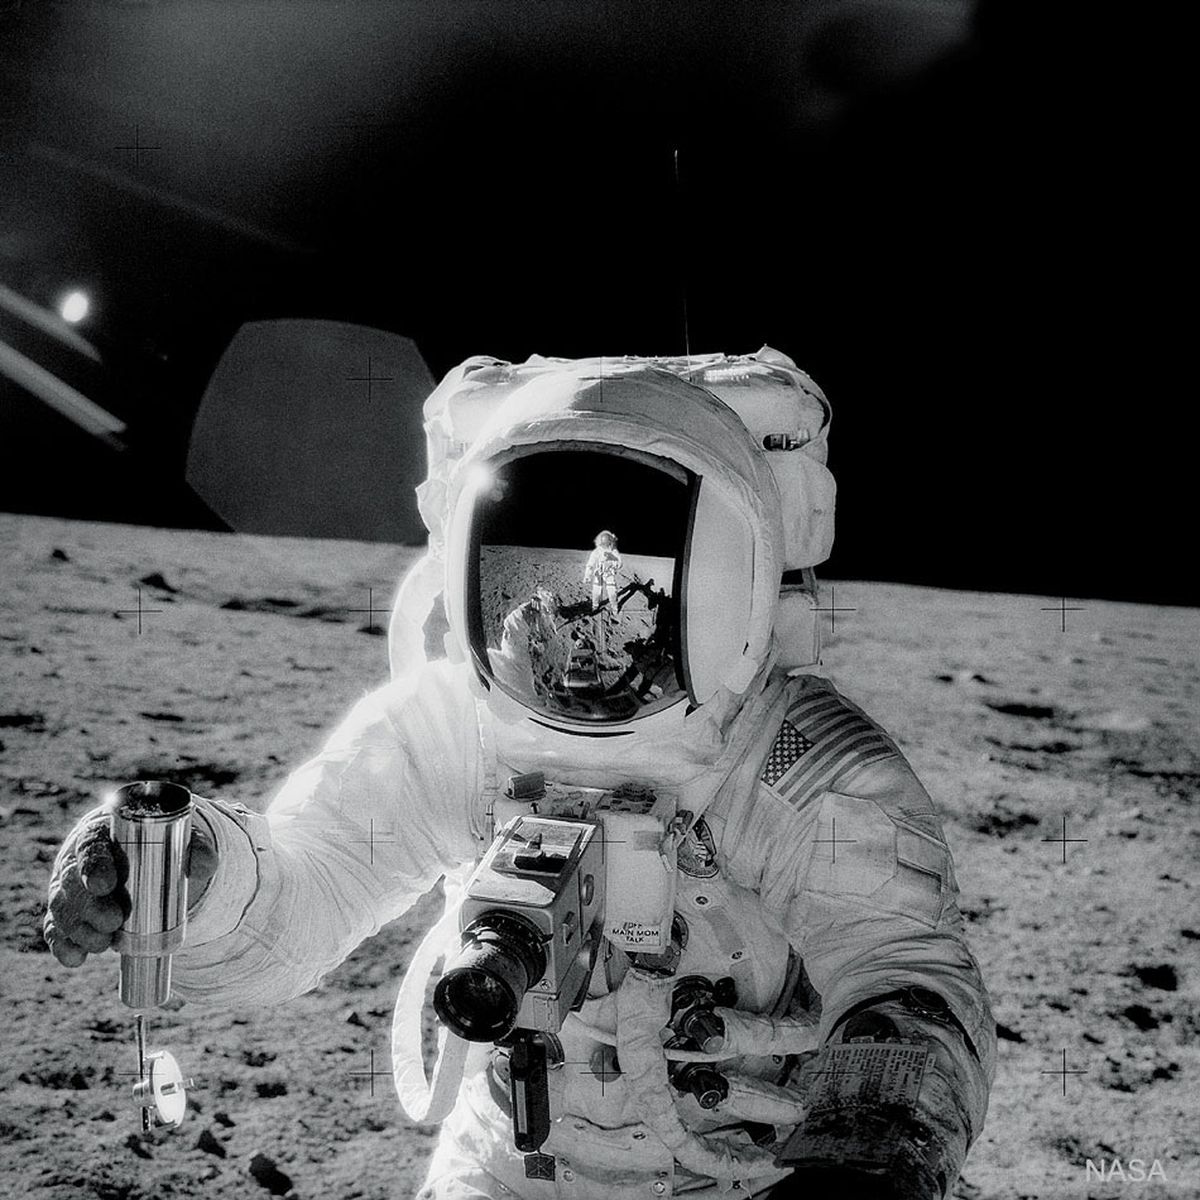  Apollo 12: Self-Portrait 